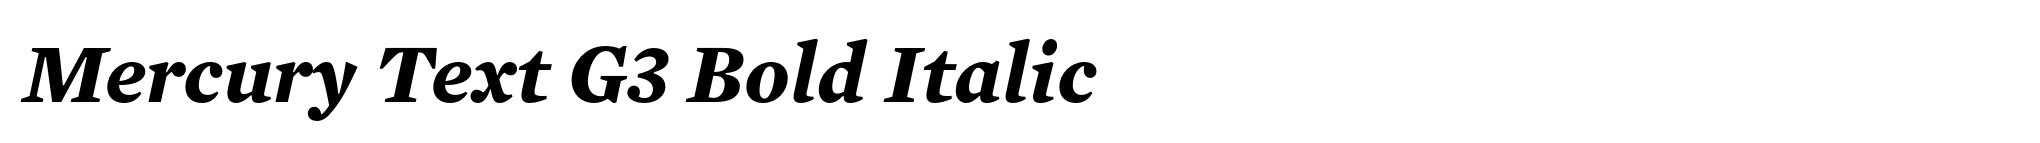 Mercury Text G3 Bold Italic image